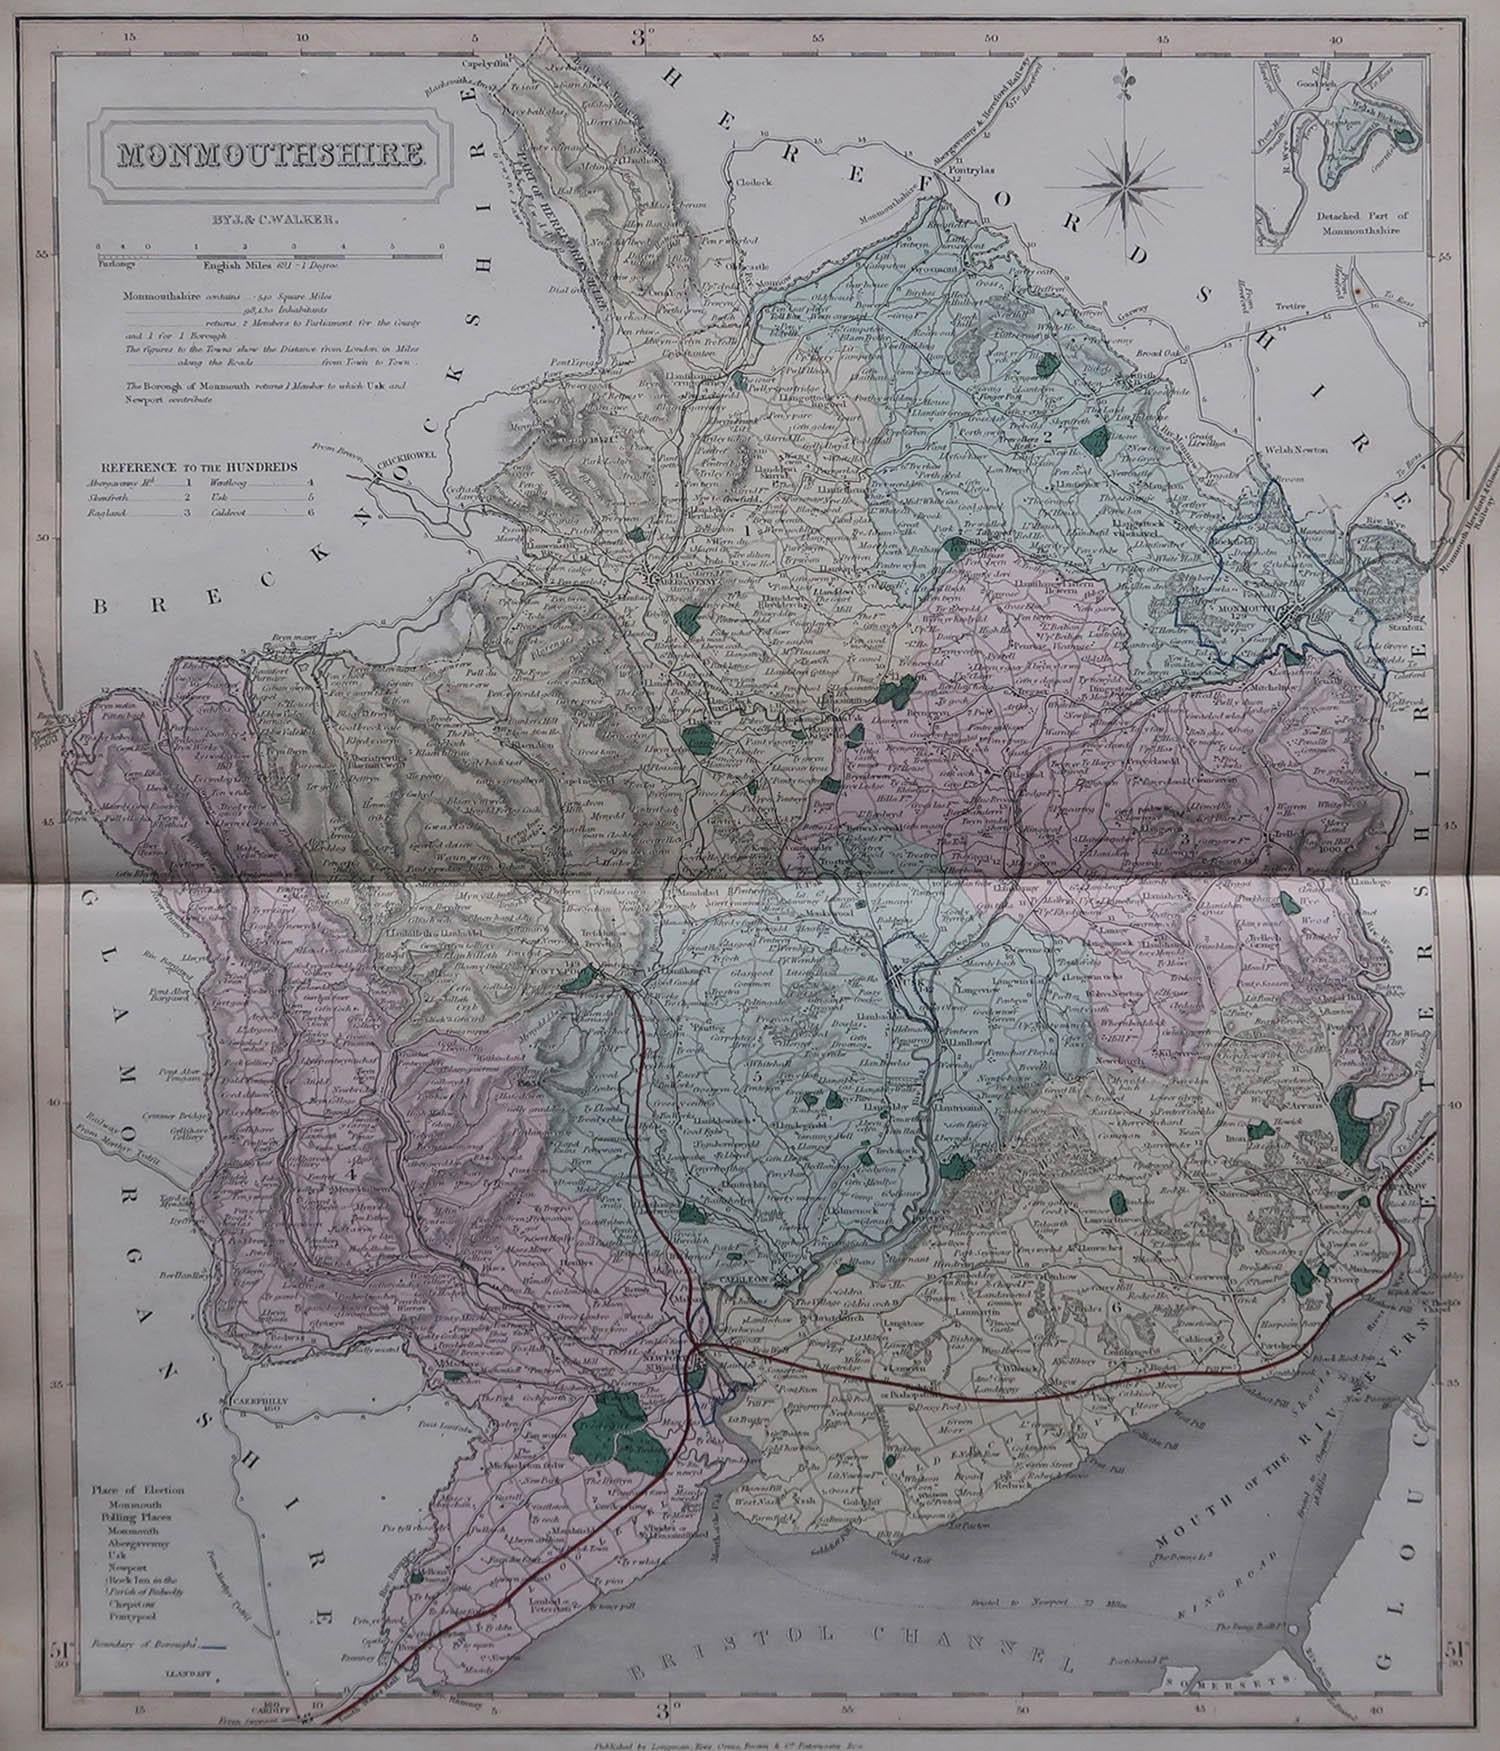 Großartige Karte von Monmouthshire

Original Farbe

Von J & C Walker

Veröffentlicht von Longman, Rees, Orme, Brown & Co. 1851

Ungerahmt.




